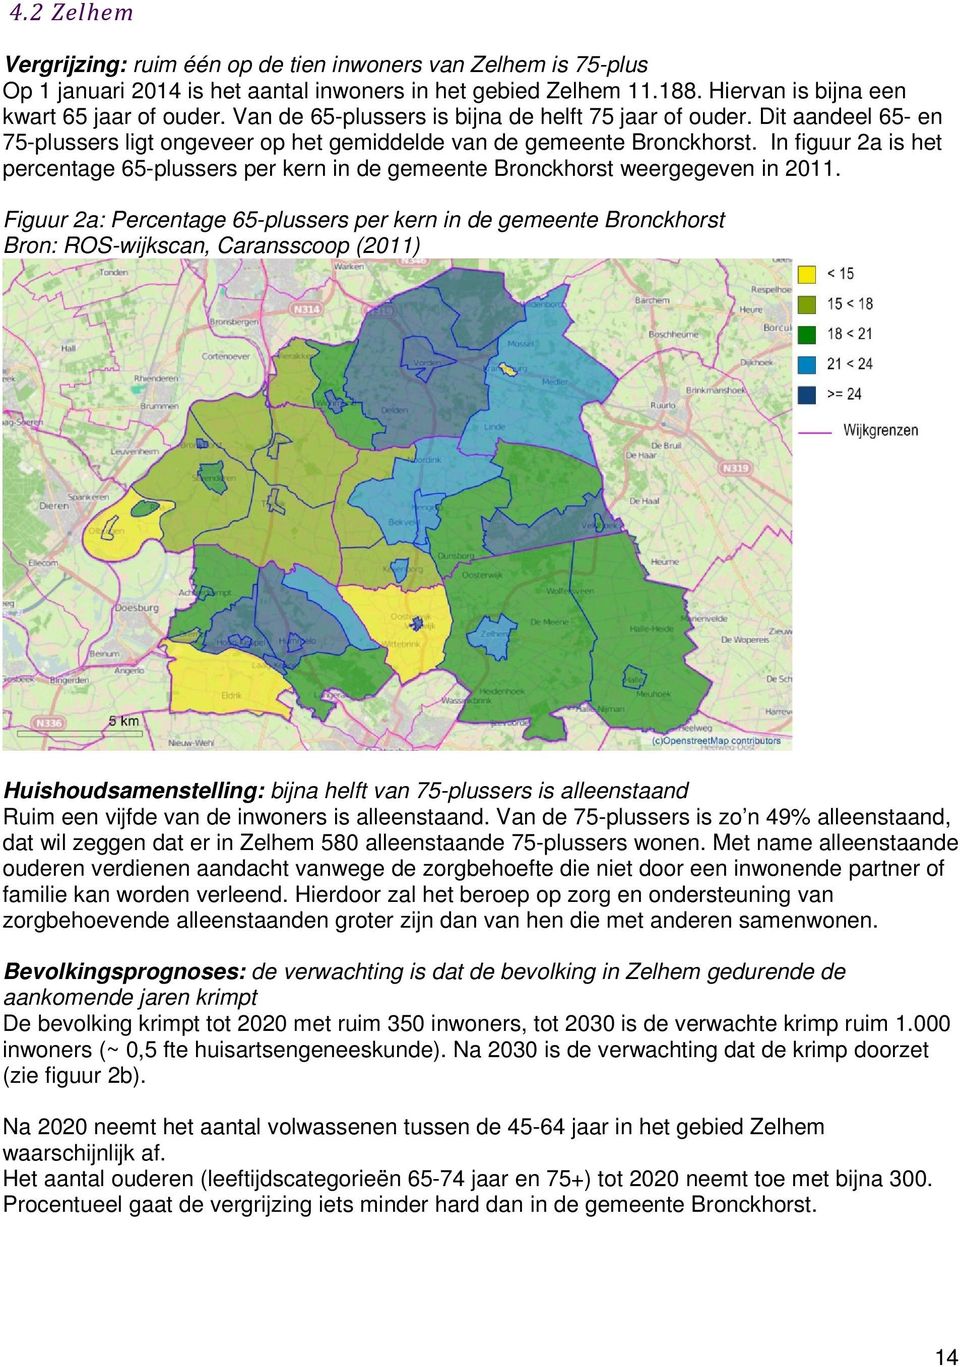 In figuur 2a is het percentage 65-plussers per kern in de gemeente Bronckhorst weergegeven in 2011.